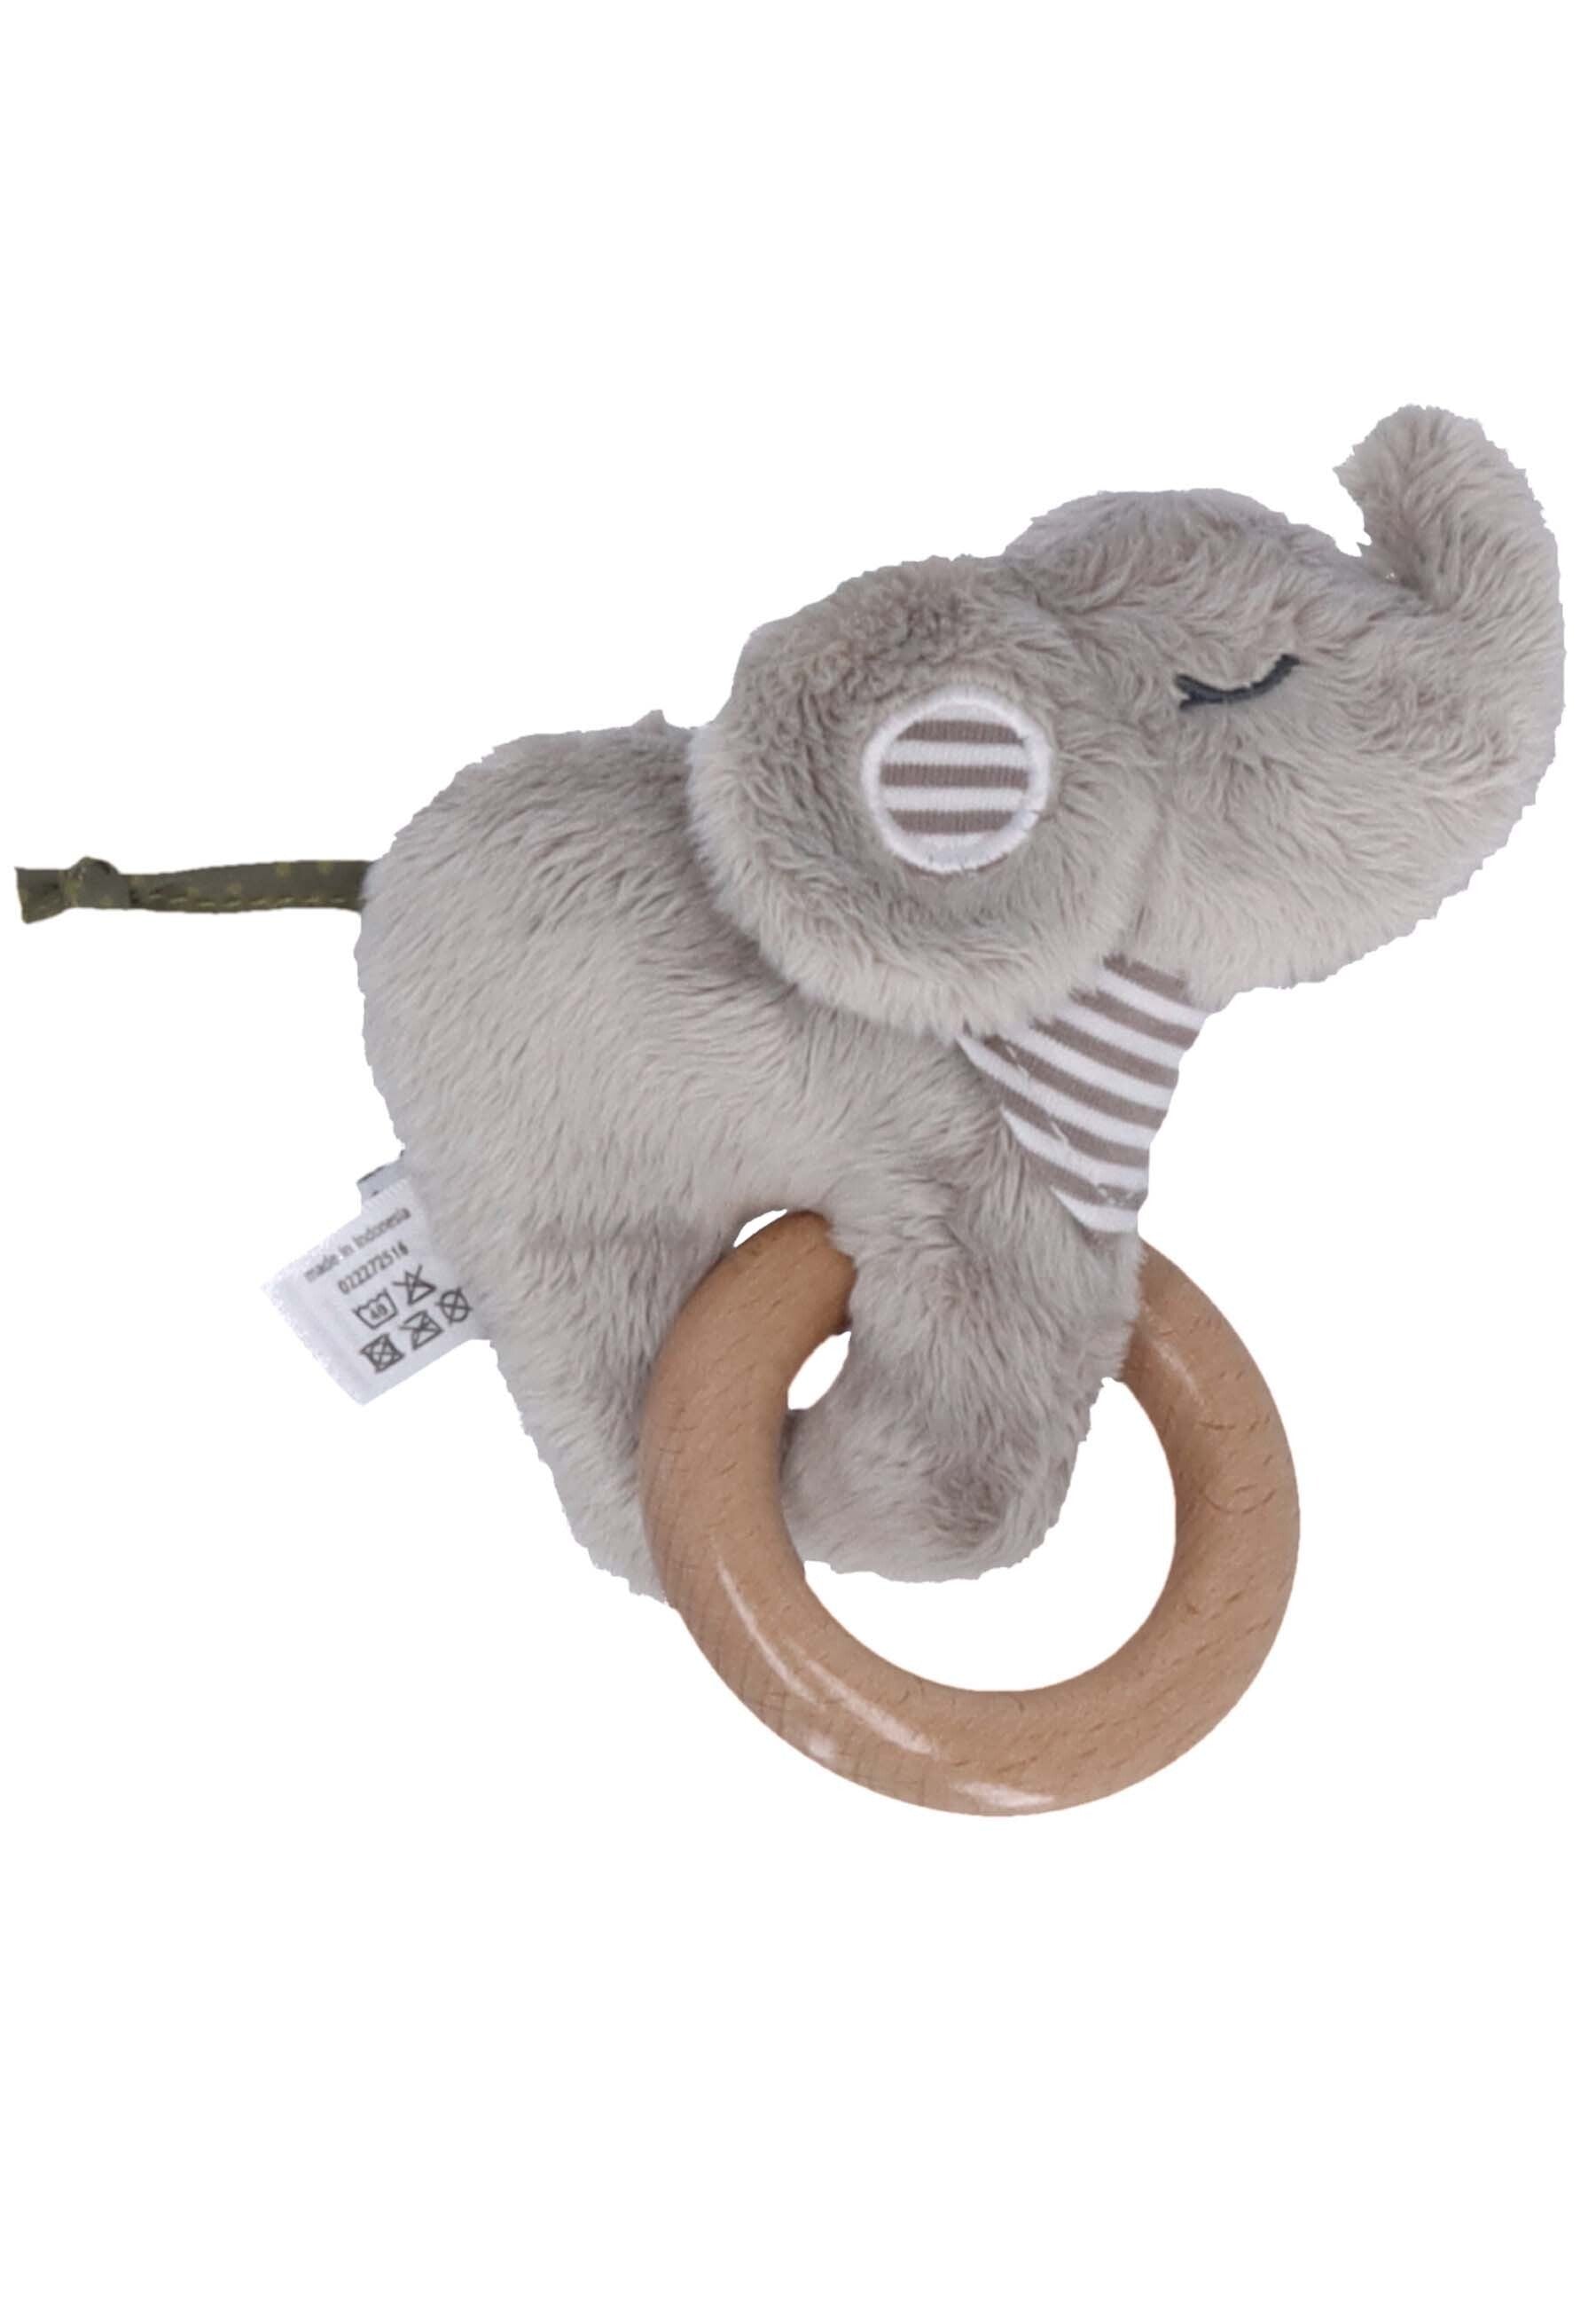 Spielfigur mit Holz Greifring Elefant ⭐️ Eddy, Grau